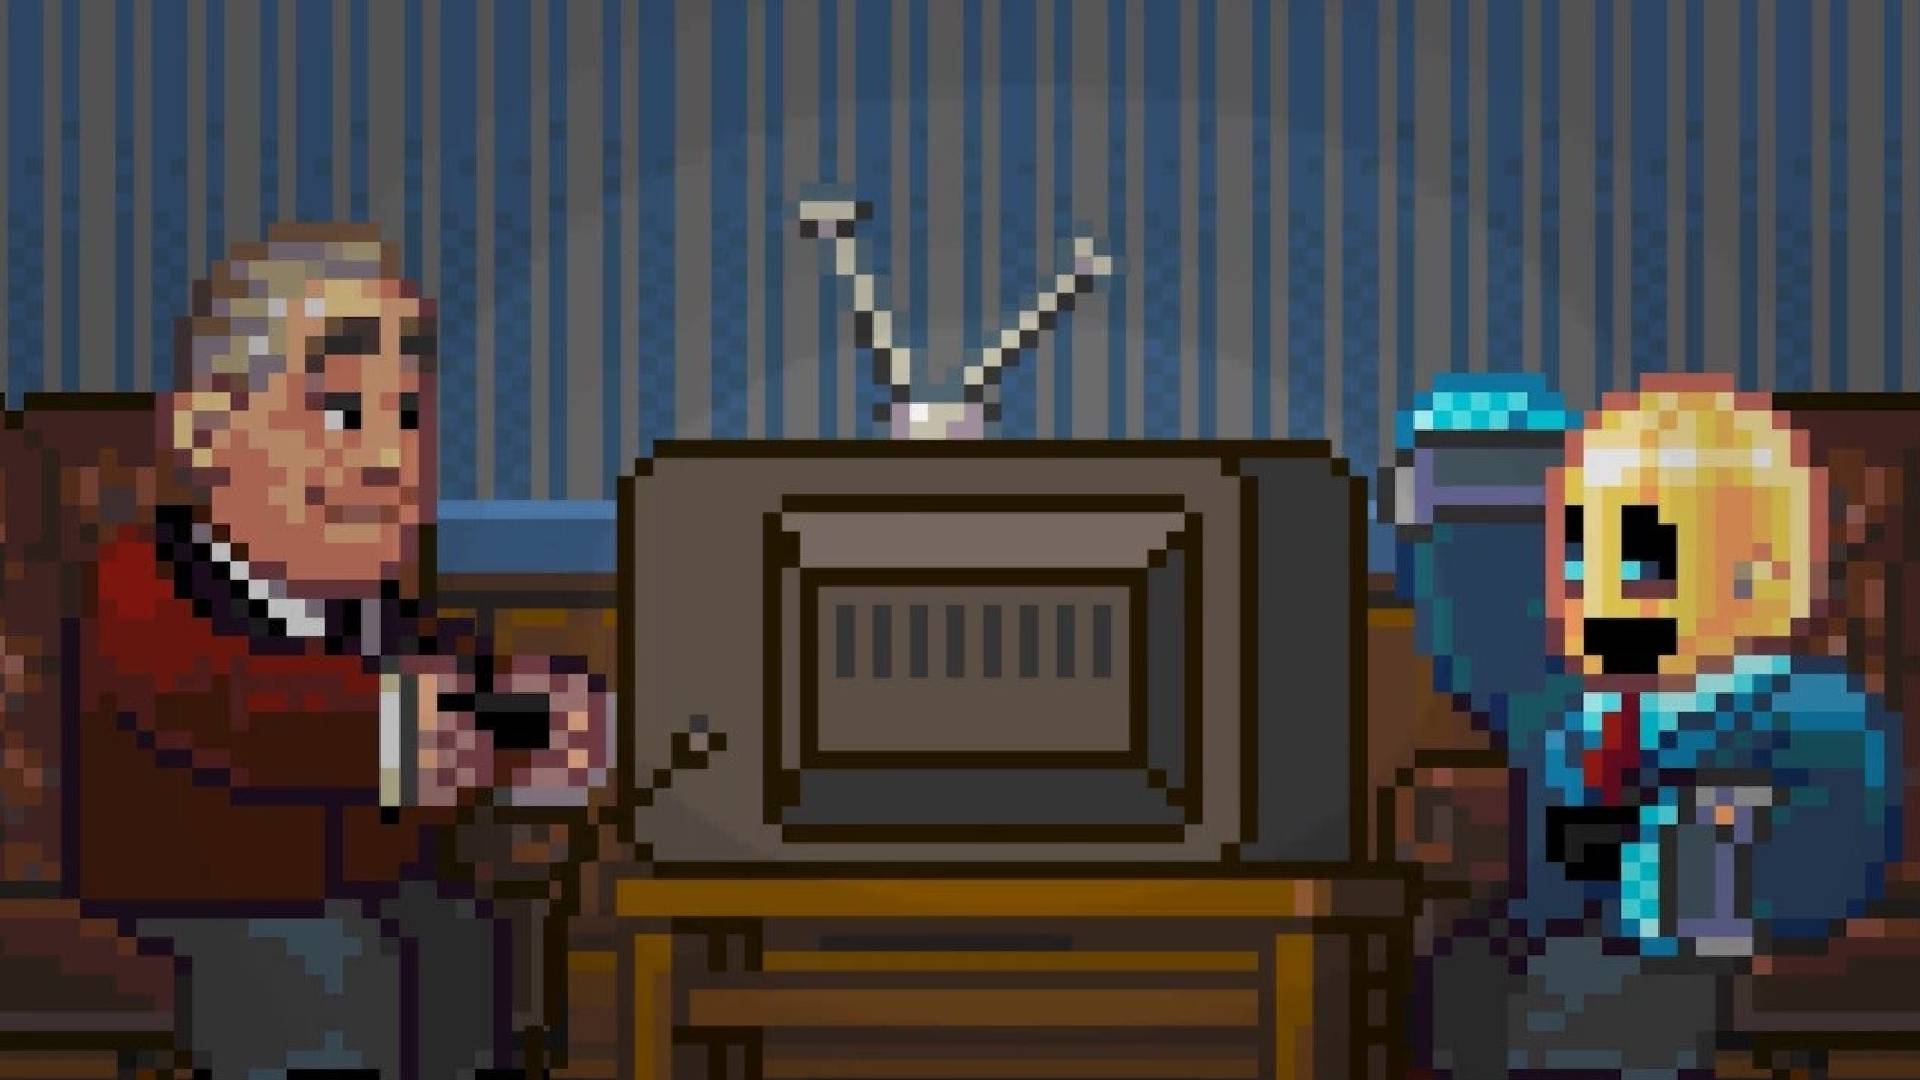 Jogos engraçados: Uma cena pixelada mostra um robô usando uma cartola sentado com um homem de roupão, jogando videogames